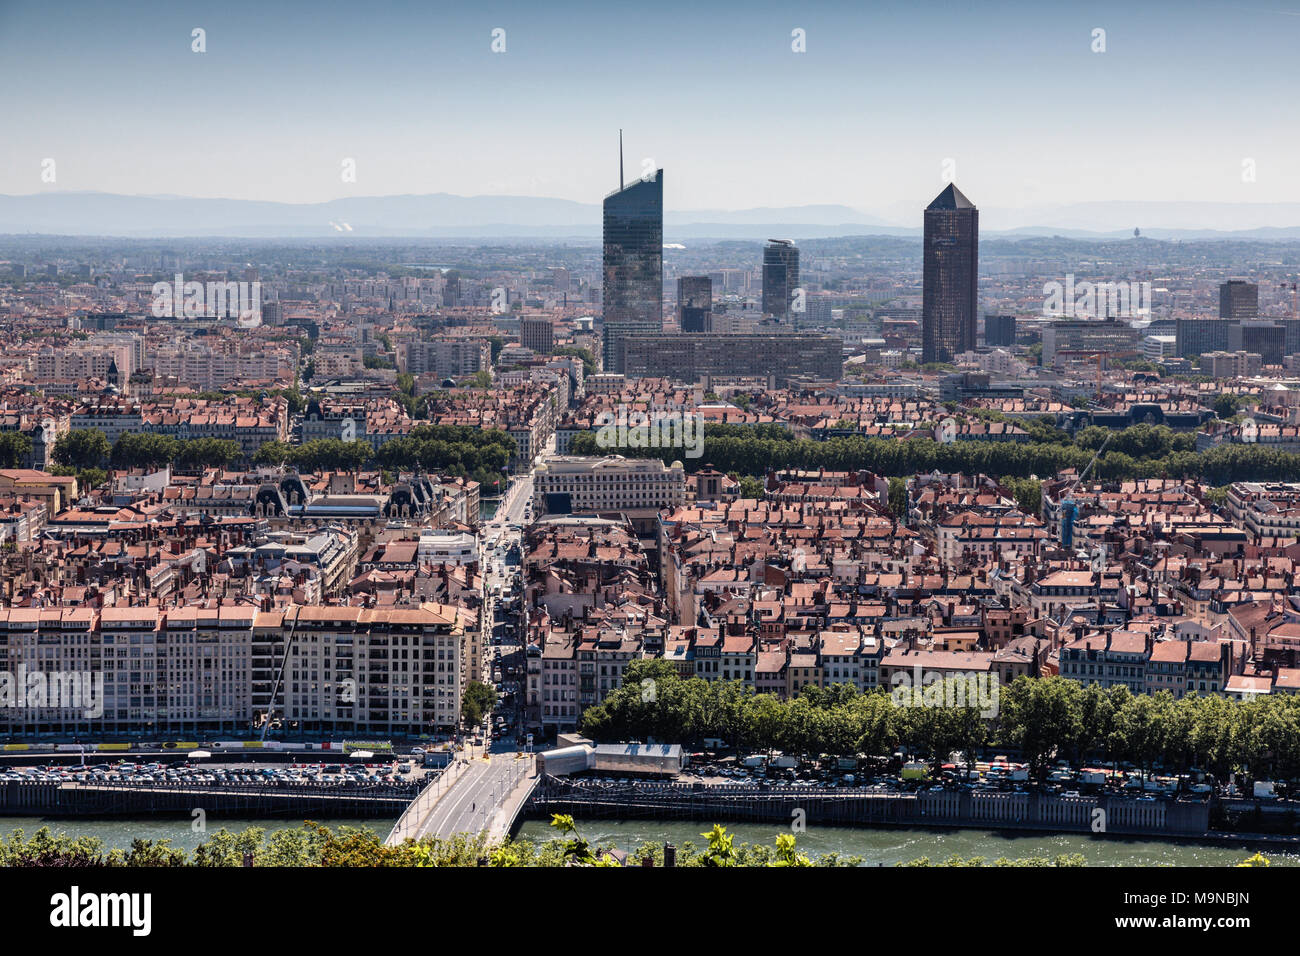 View of Lyon city centre from La Basilique Notre Dame de Fourvière, Lyon, France Stock Photo